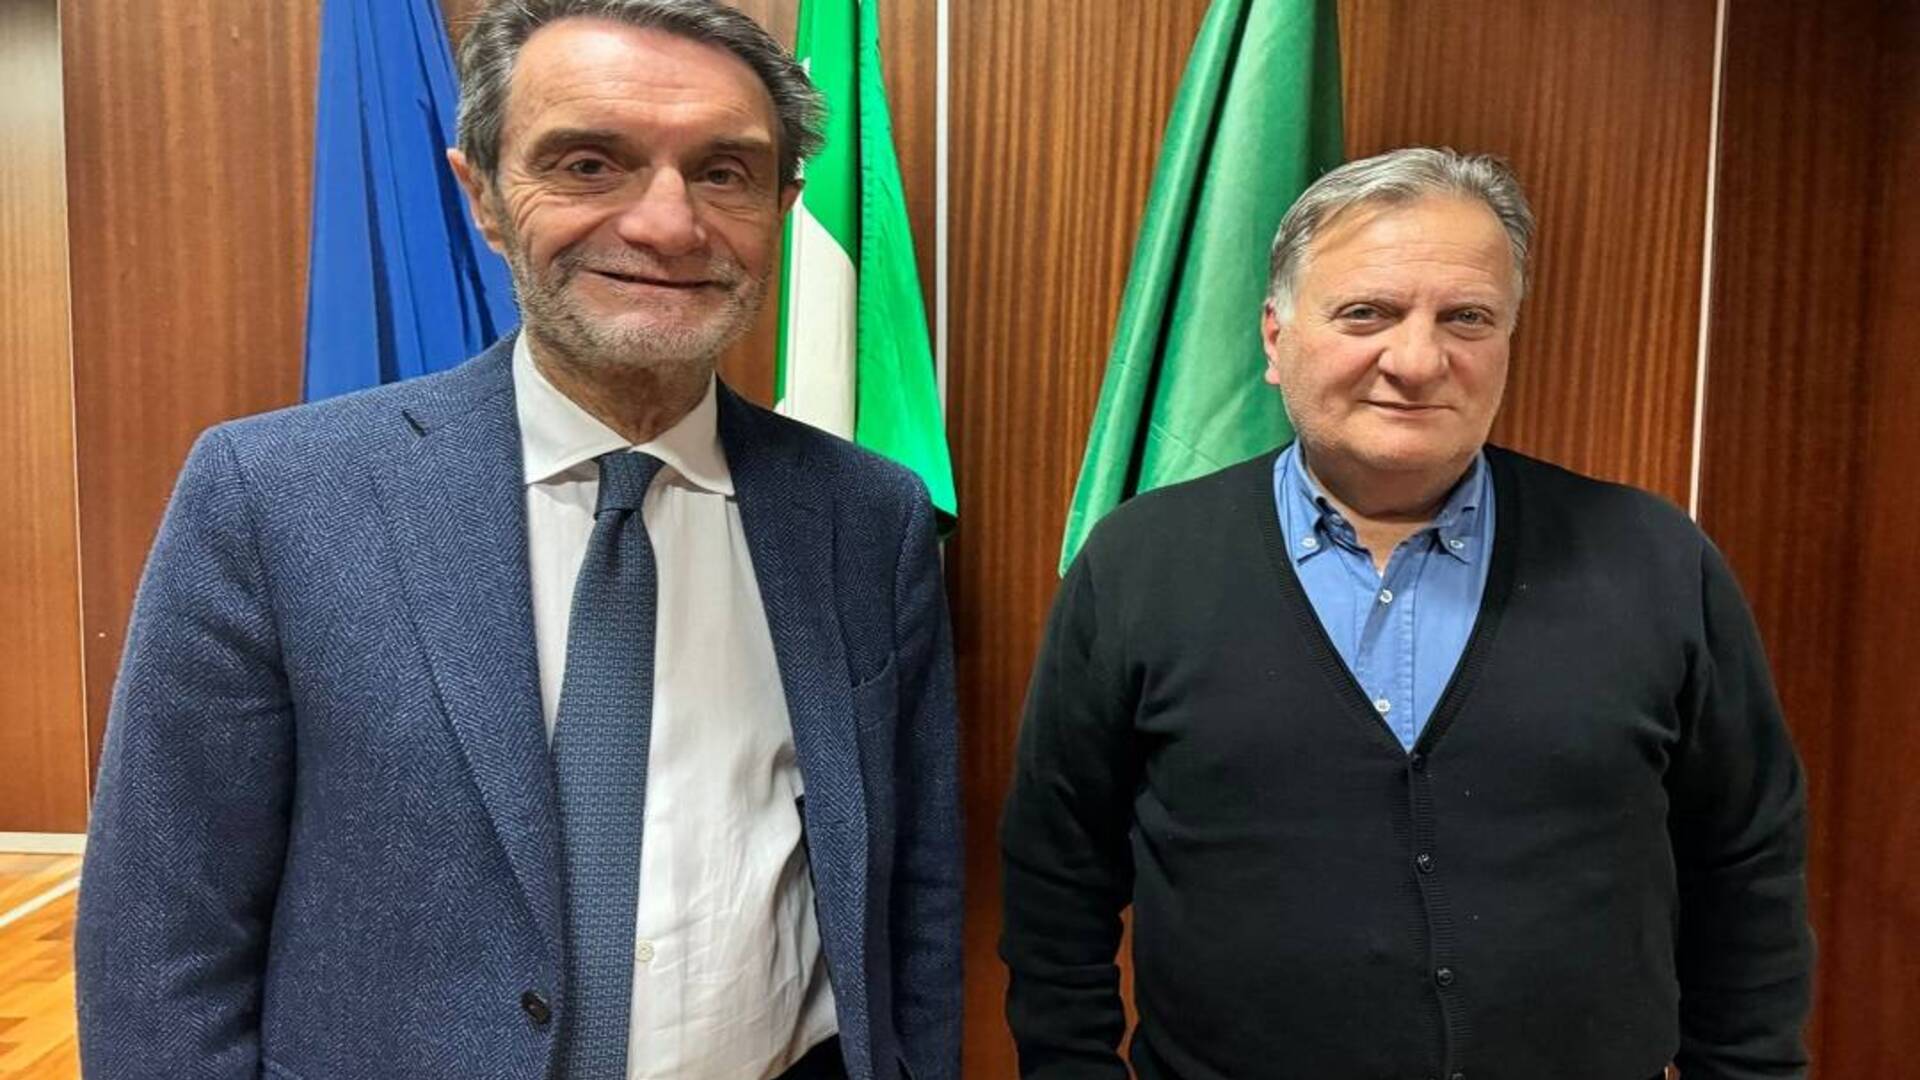 Caso Attanasio: oggi il governatore Fontana ha incontrato il padre dell’ambasciatore